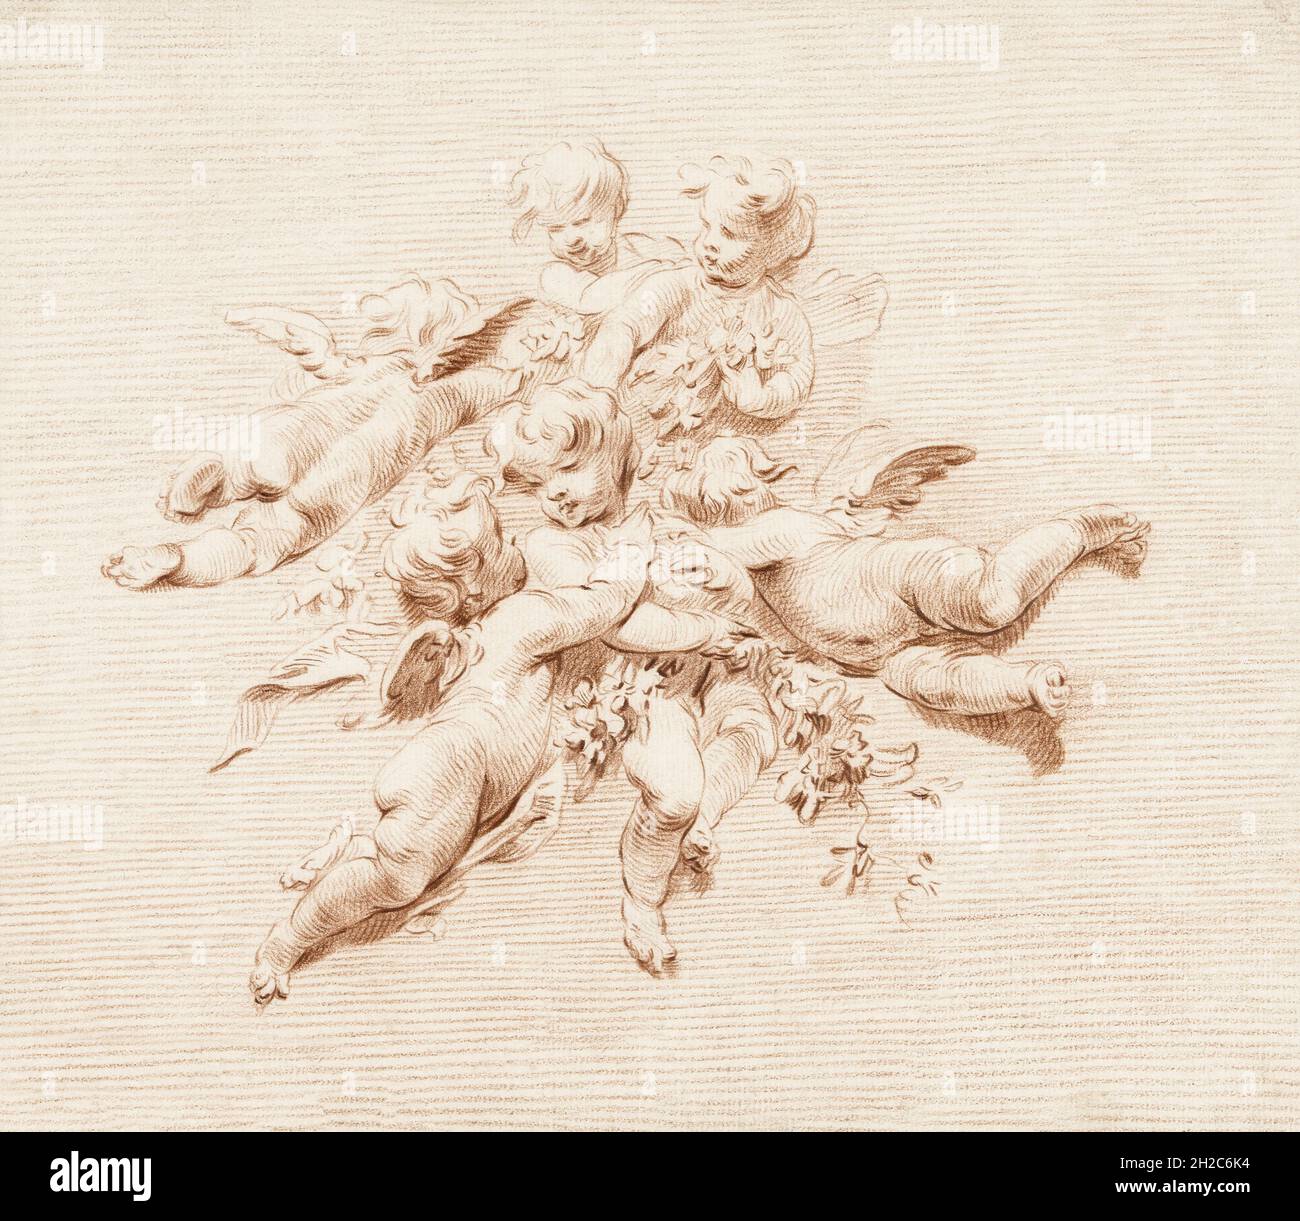 Eine Gruppe von Engeln. Nach einem Werk von Jacob de Wit aus dem 18. Jahrhundert. Stockfoto